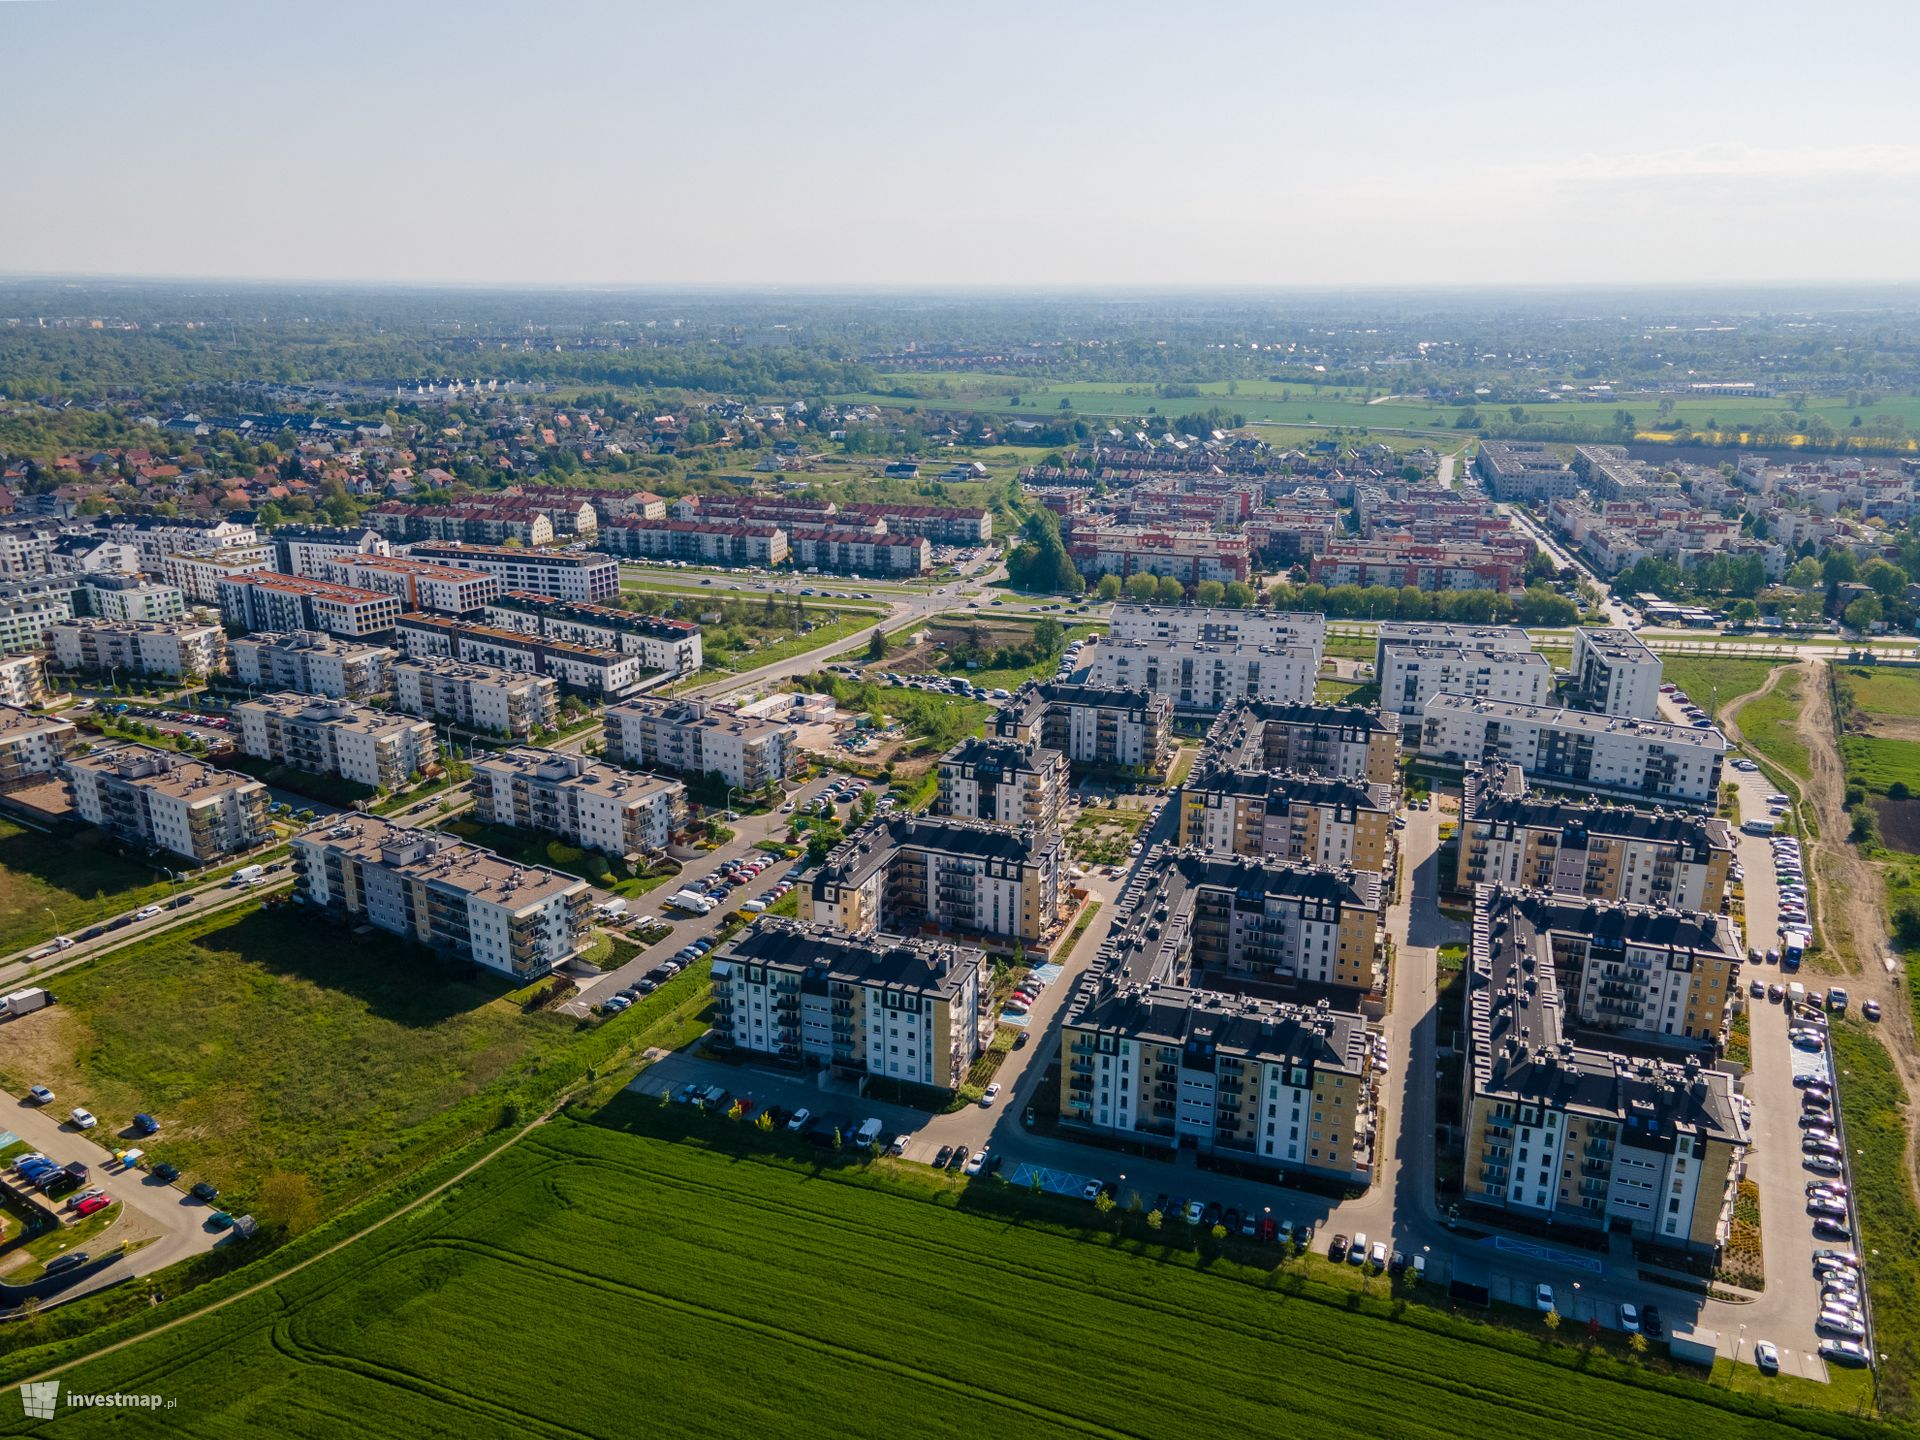 W kwietniu deweloperzy nie nadążali za kupującymi mieszkania w Polsce